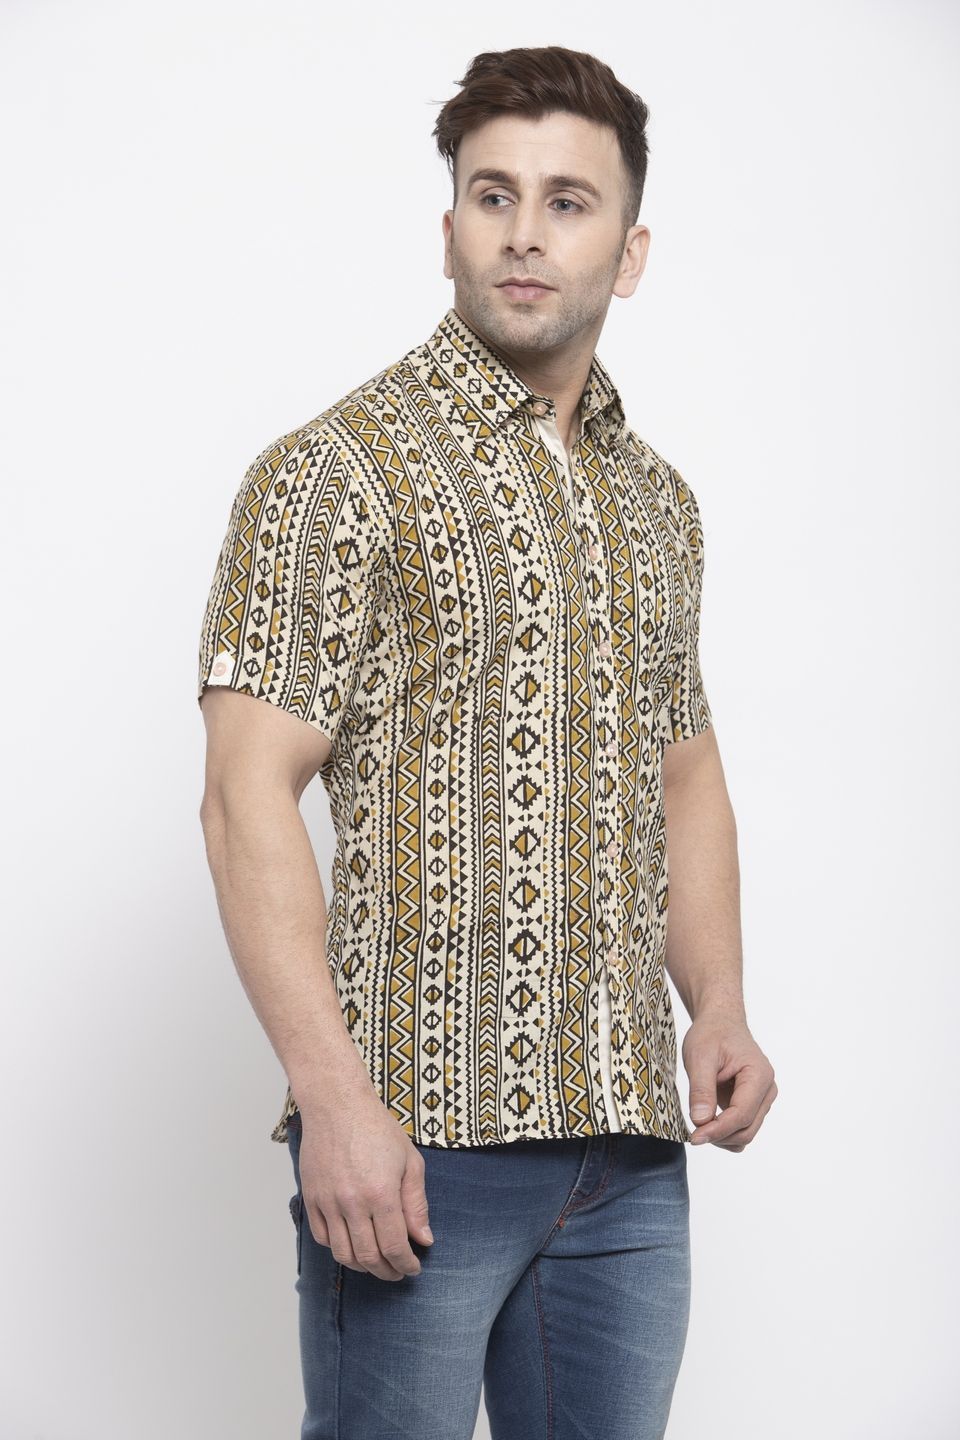 WINTAGE Men's Jaipur Cotton Tropical Hawaiian Batik Casual Shirt: Camel